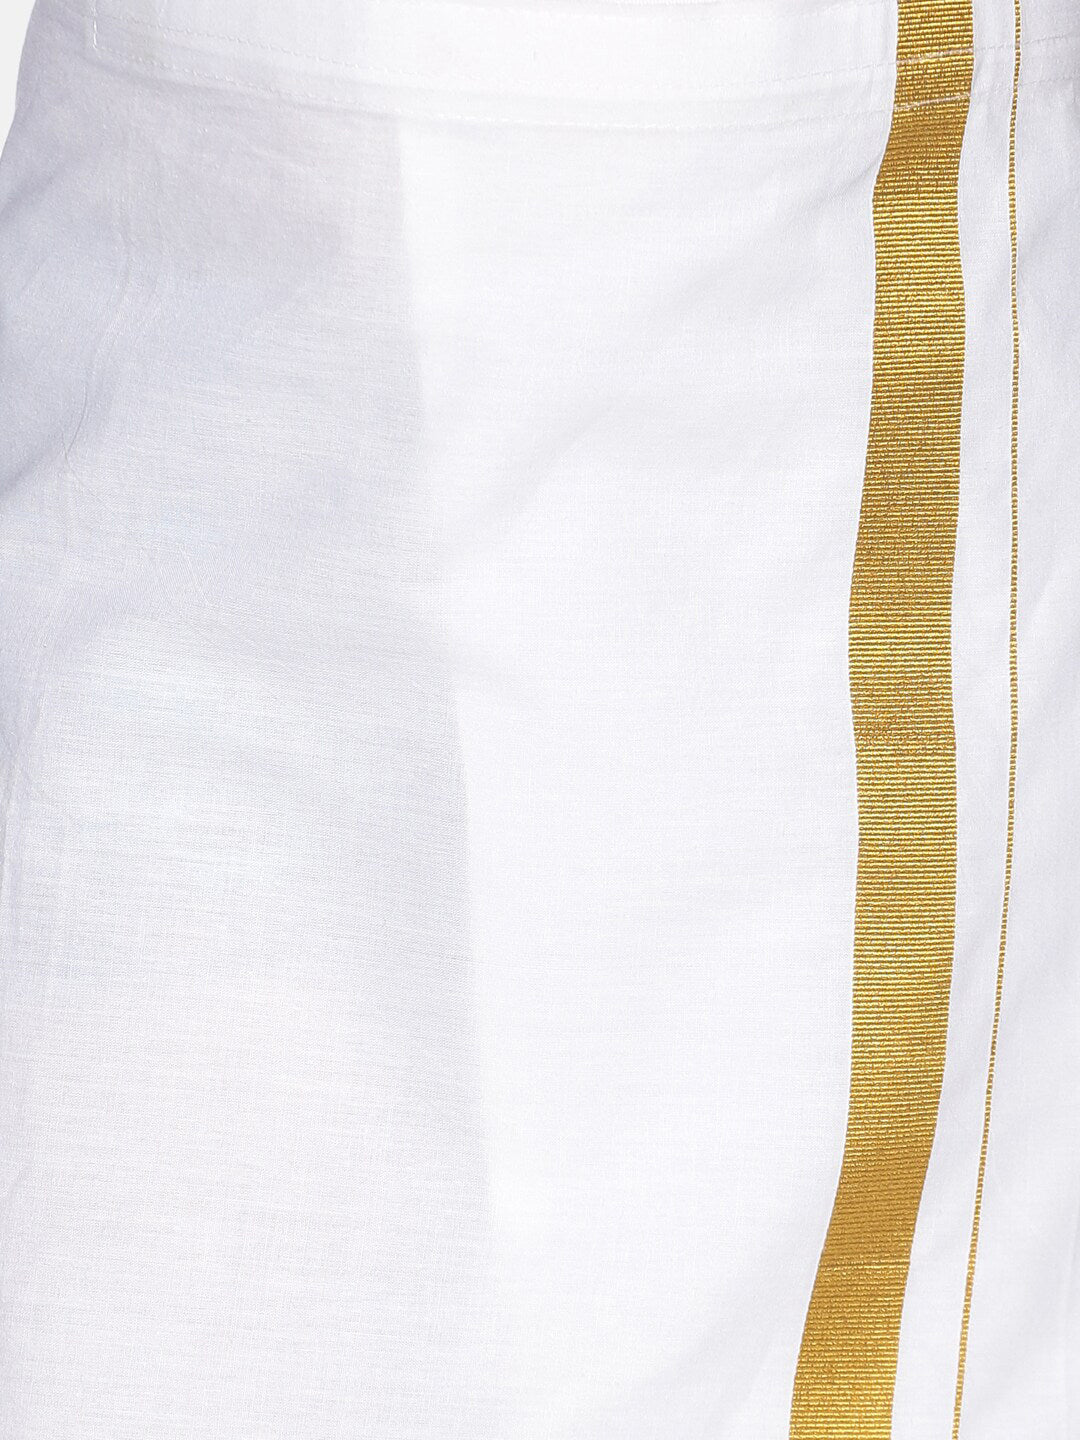 Sethukrishna Boys Blue & White Solid Shirt and Dhoti Set - Distacart